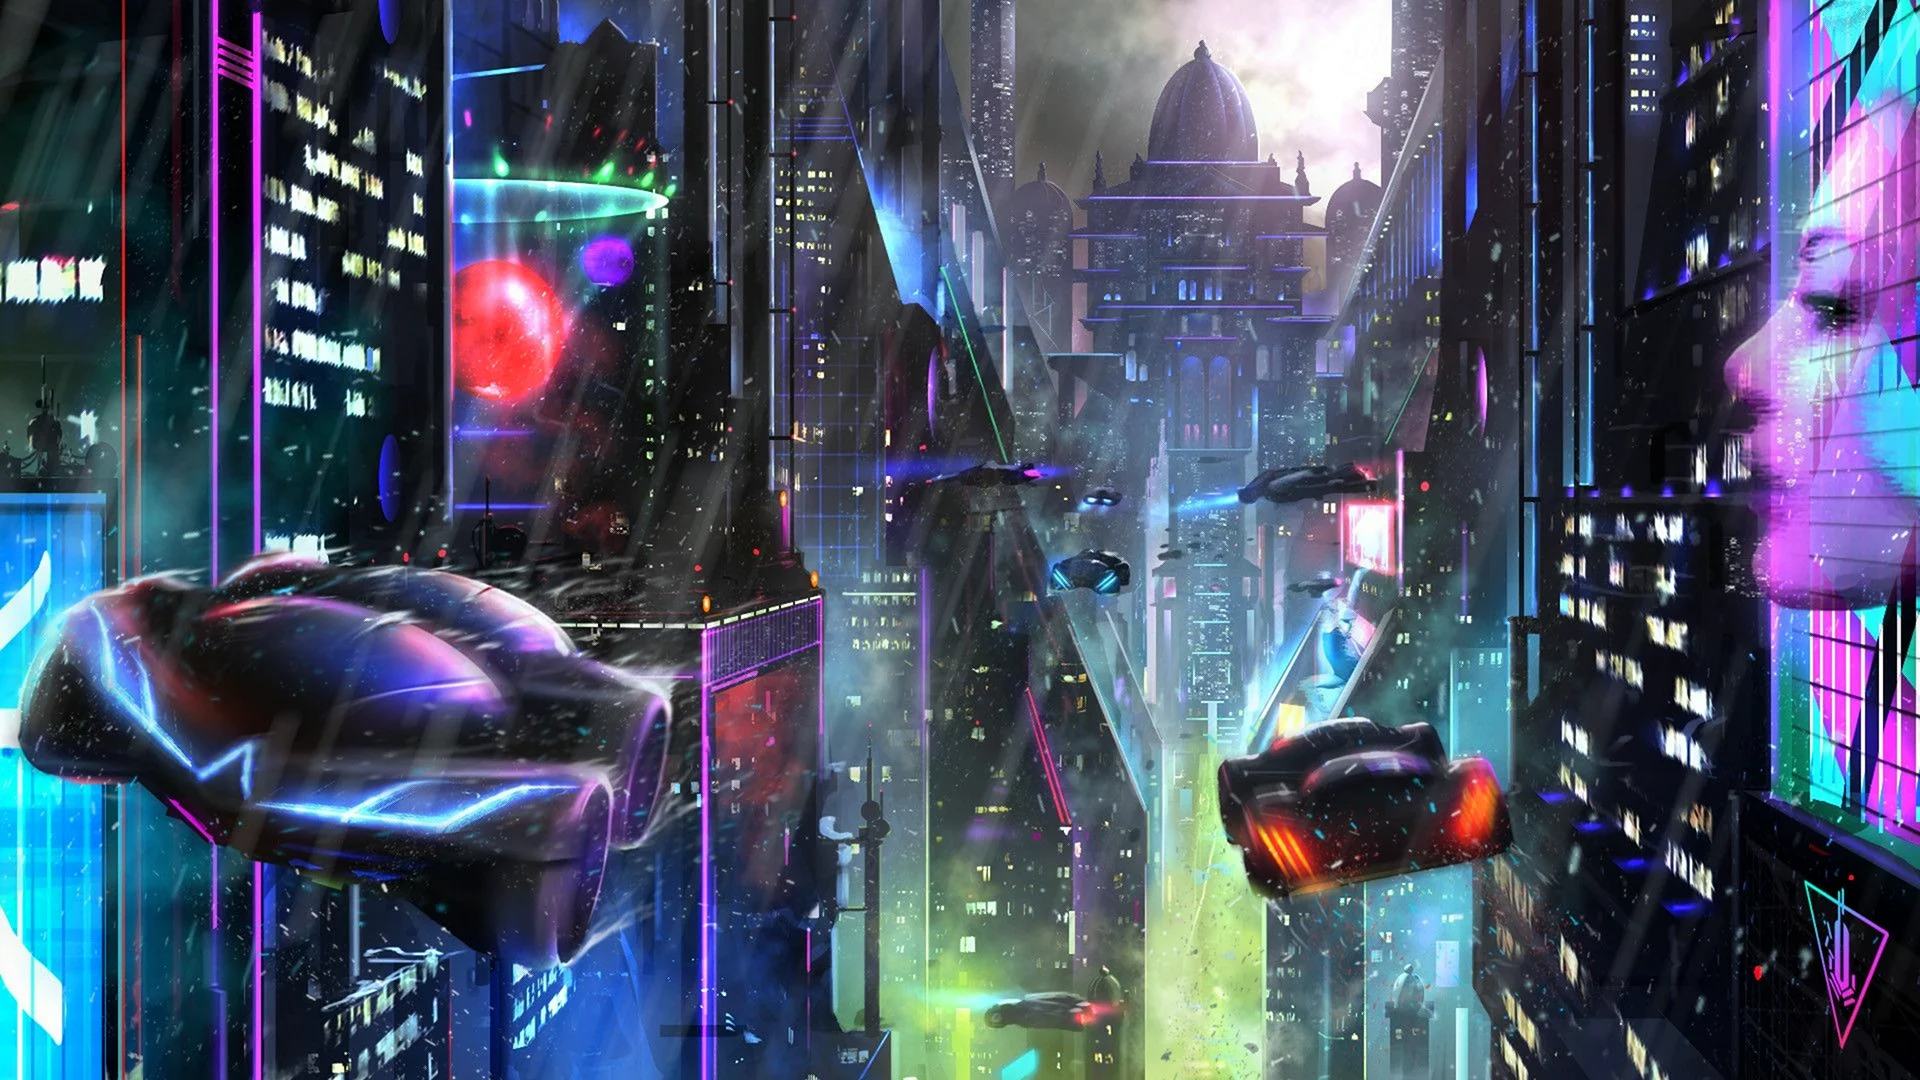 Cyberpunk Art City зеленый